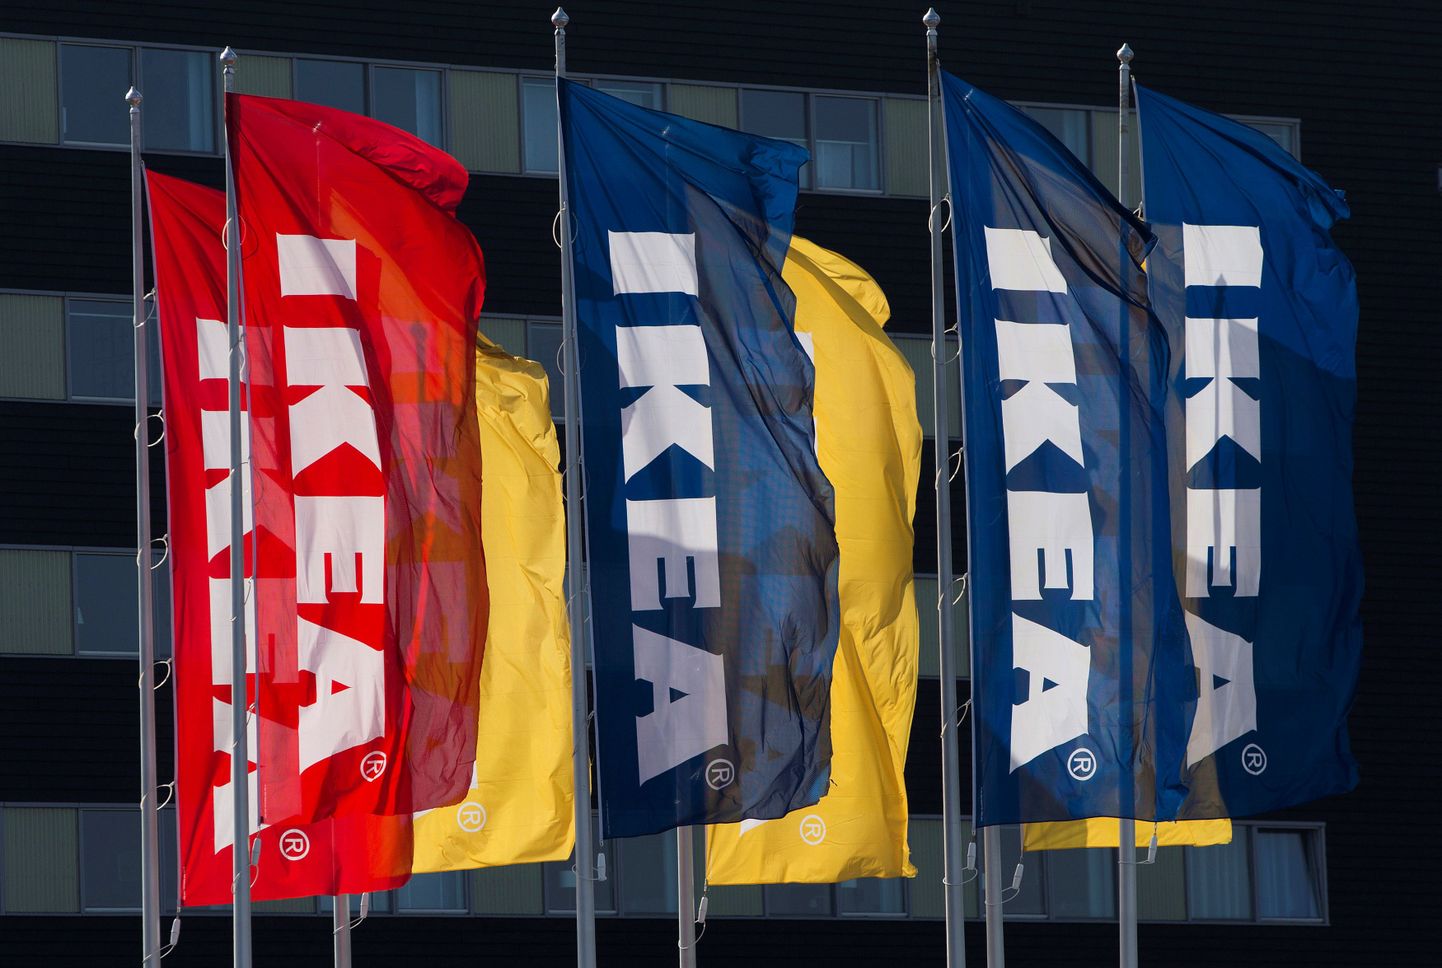 Возможно в Таллинне появится магазин Ikea.